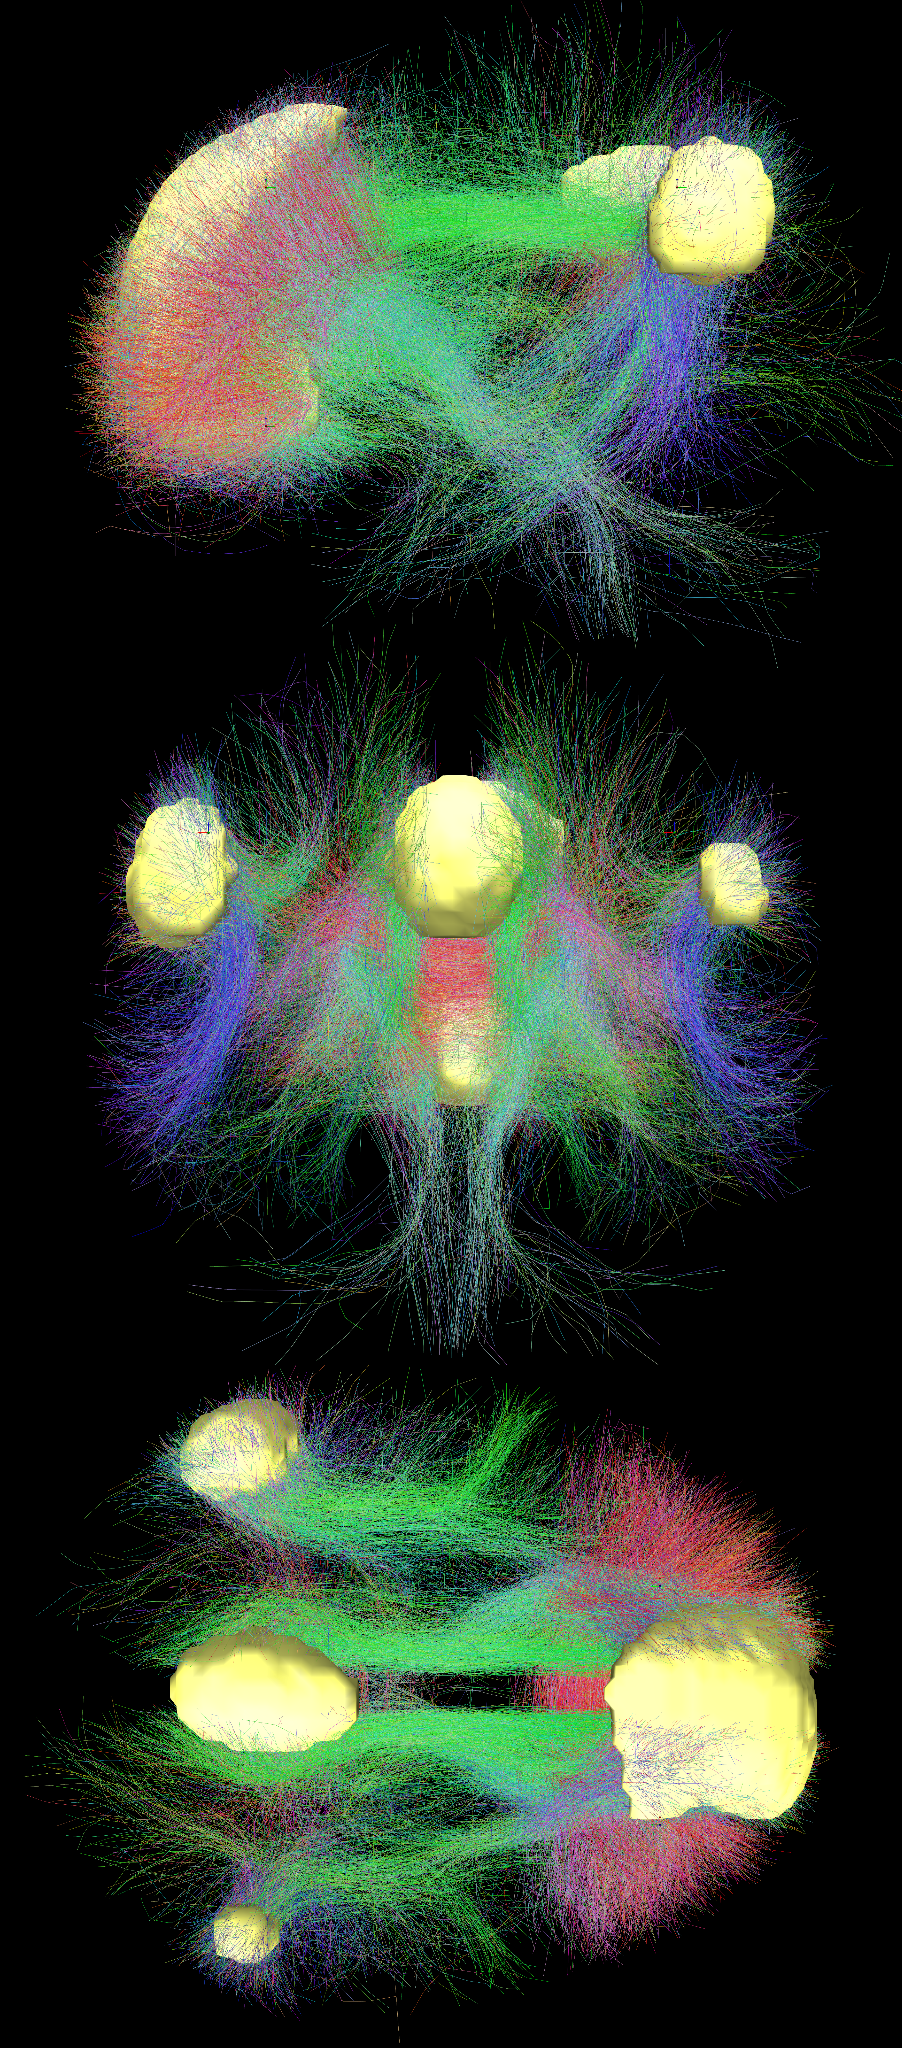 Визуализация коннектома между главными функциональными центрами сети по умолчанию в мозге человека